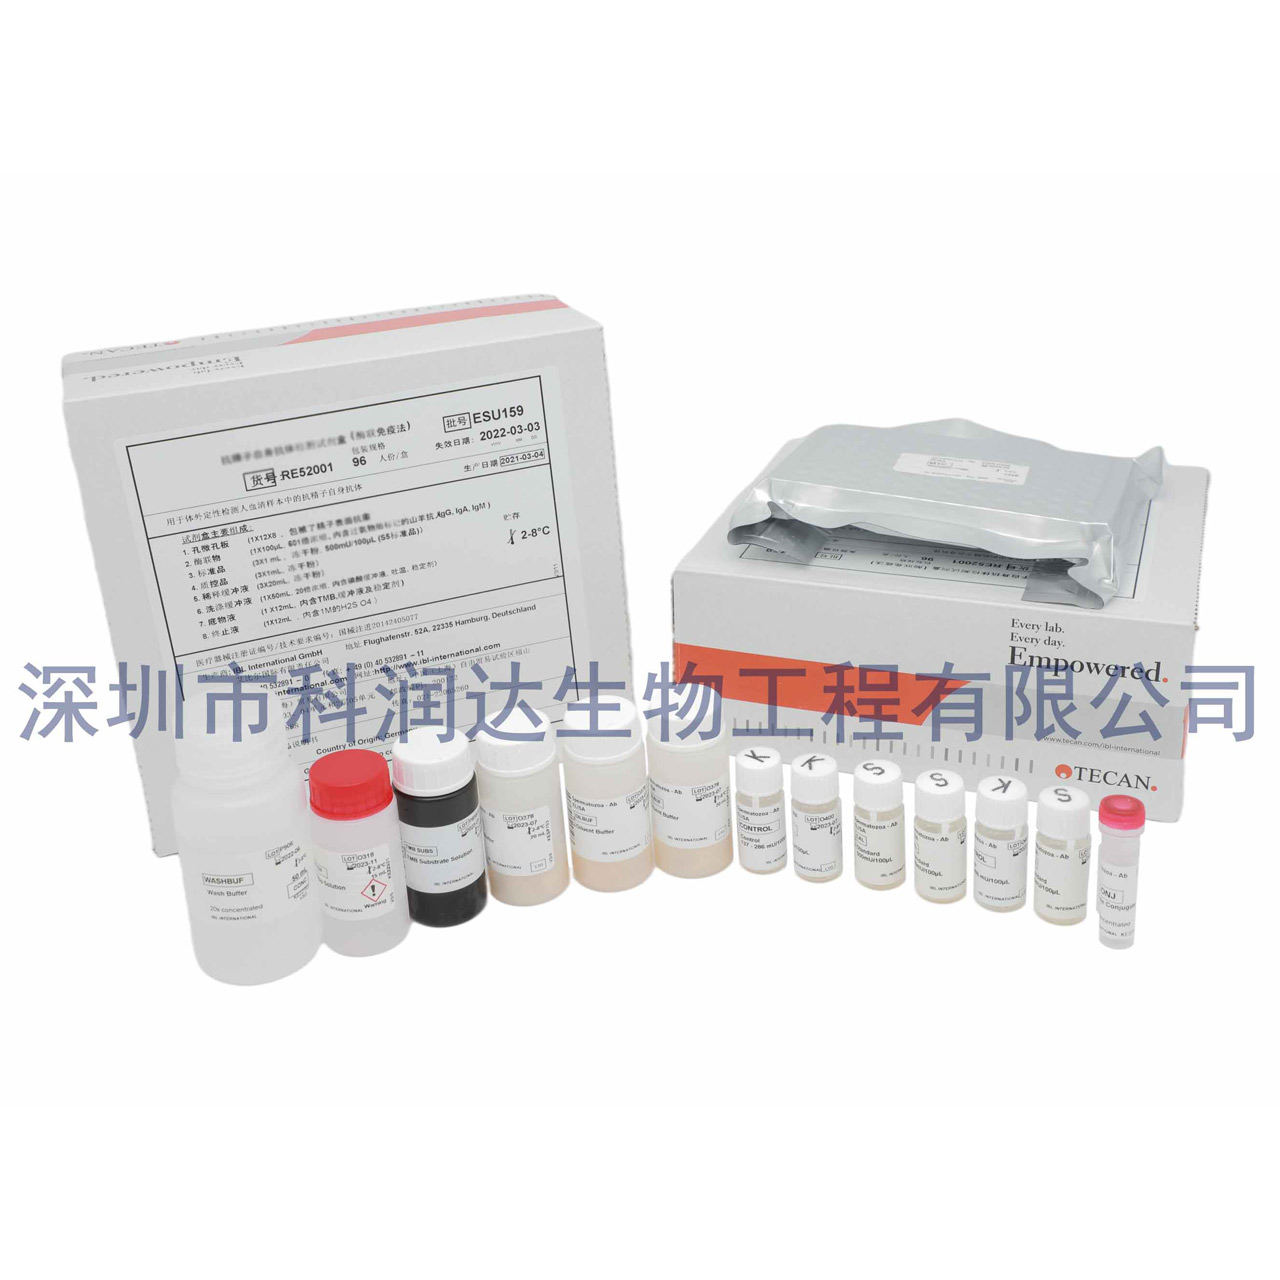 白色念珠菌IgG抗体检测试剂盒